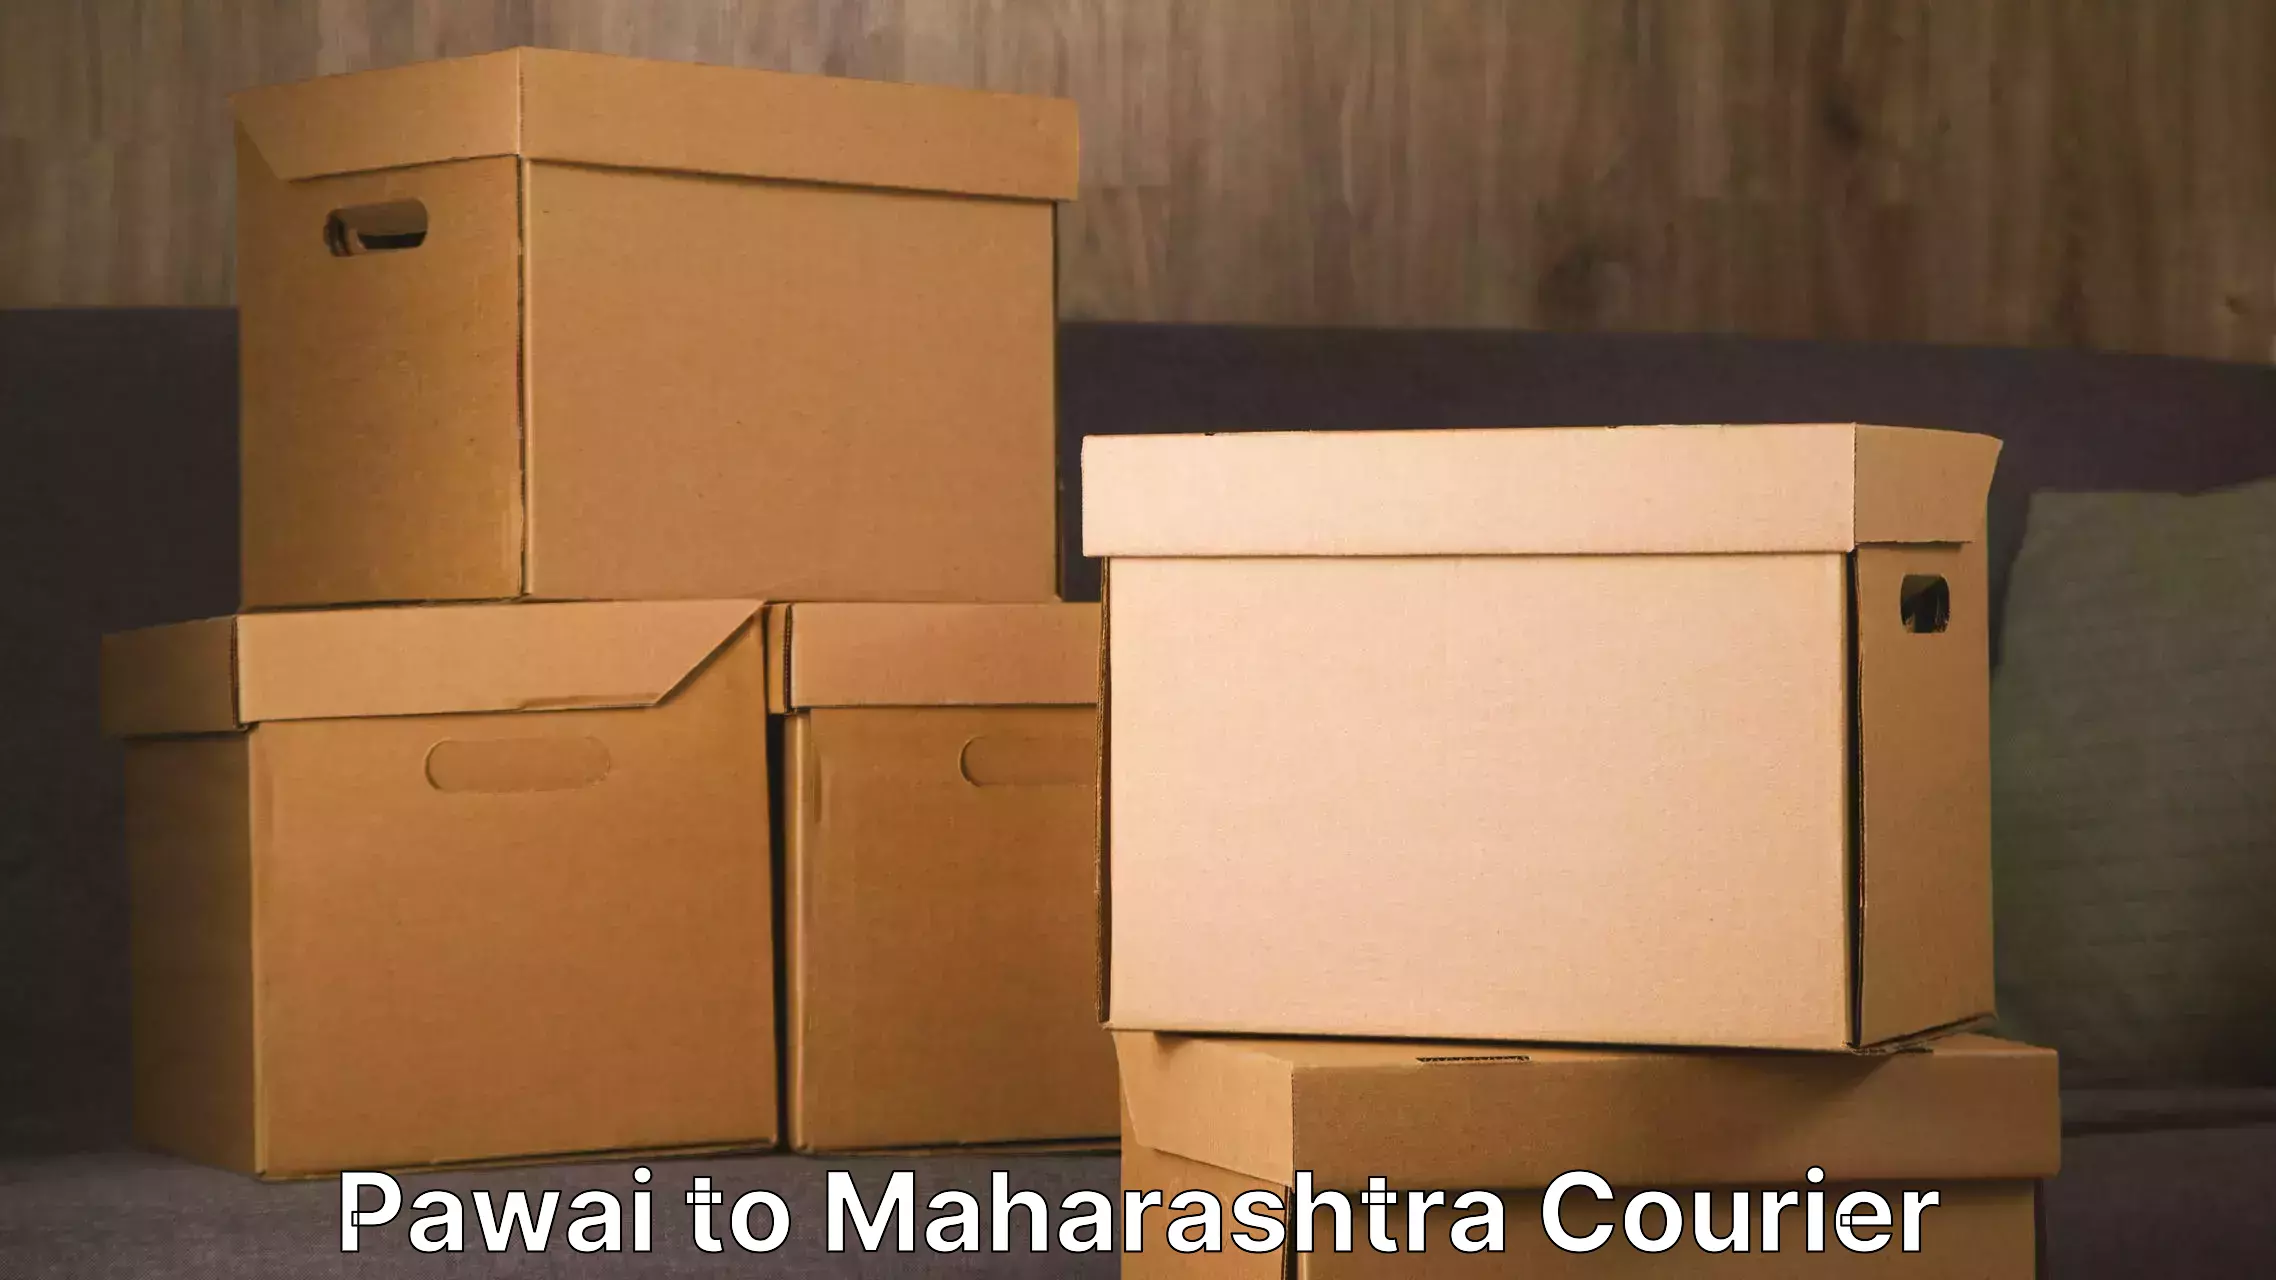 Trusted moving company Pawai to Maharashtra